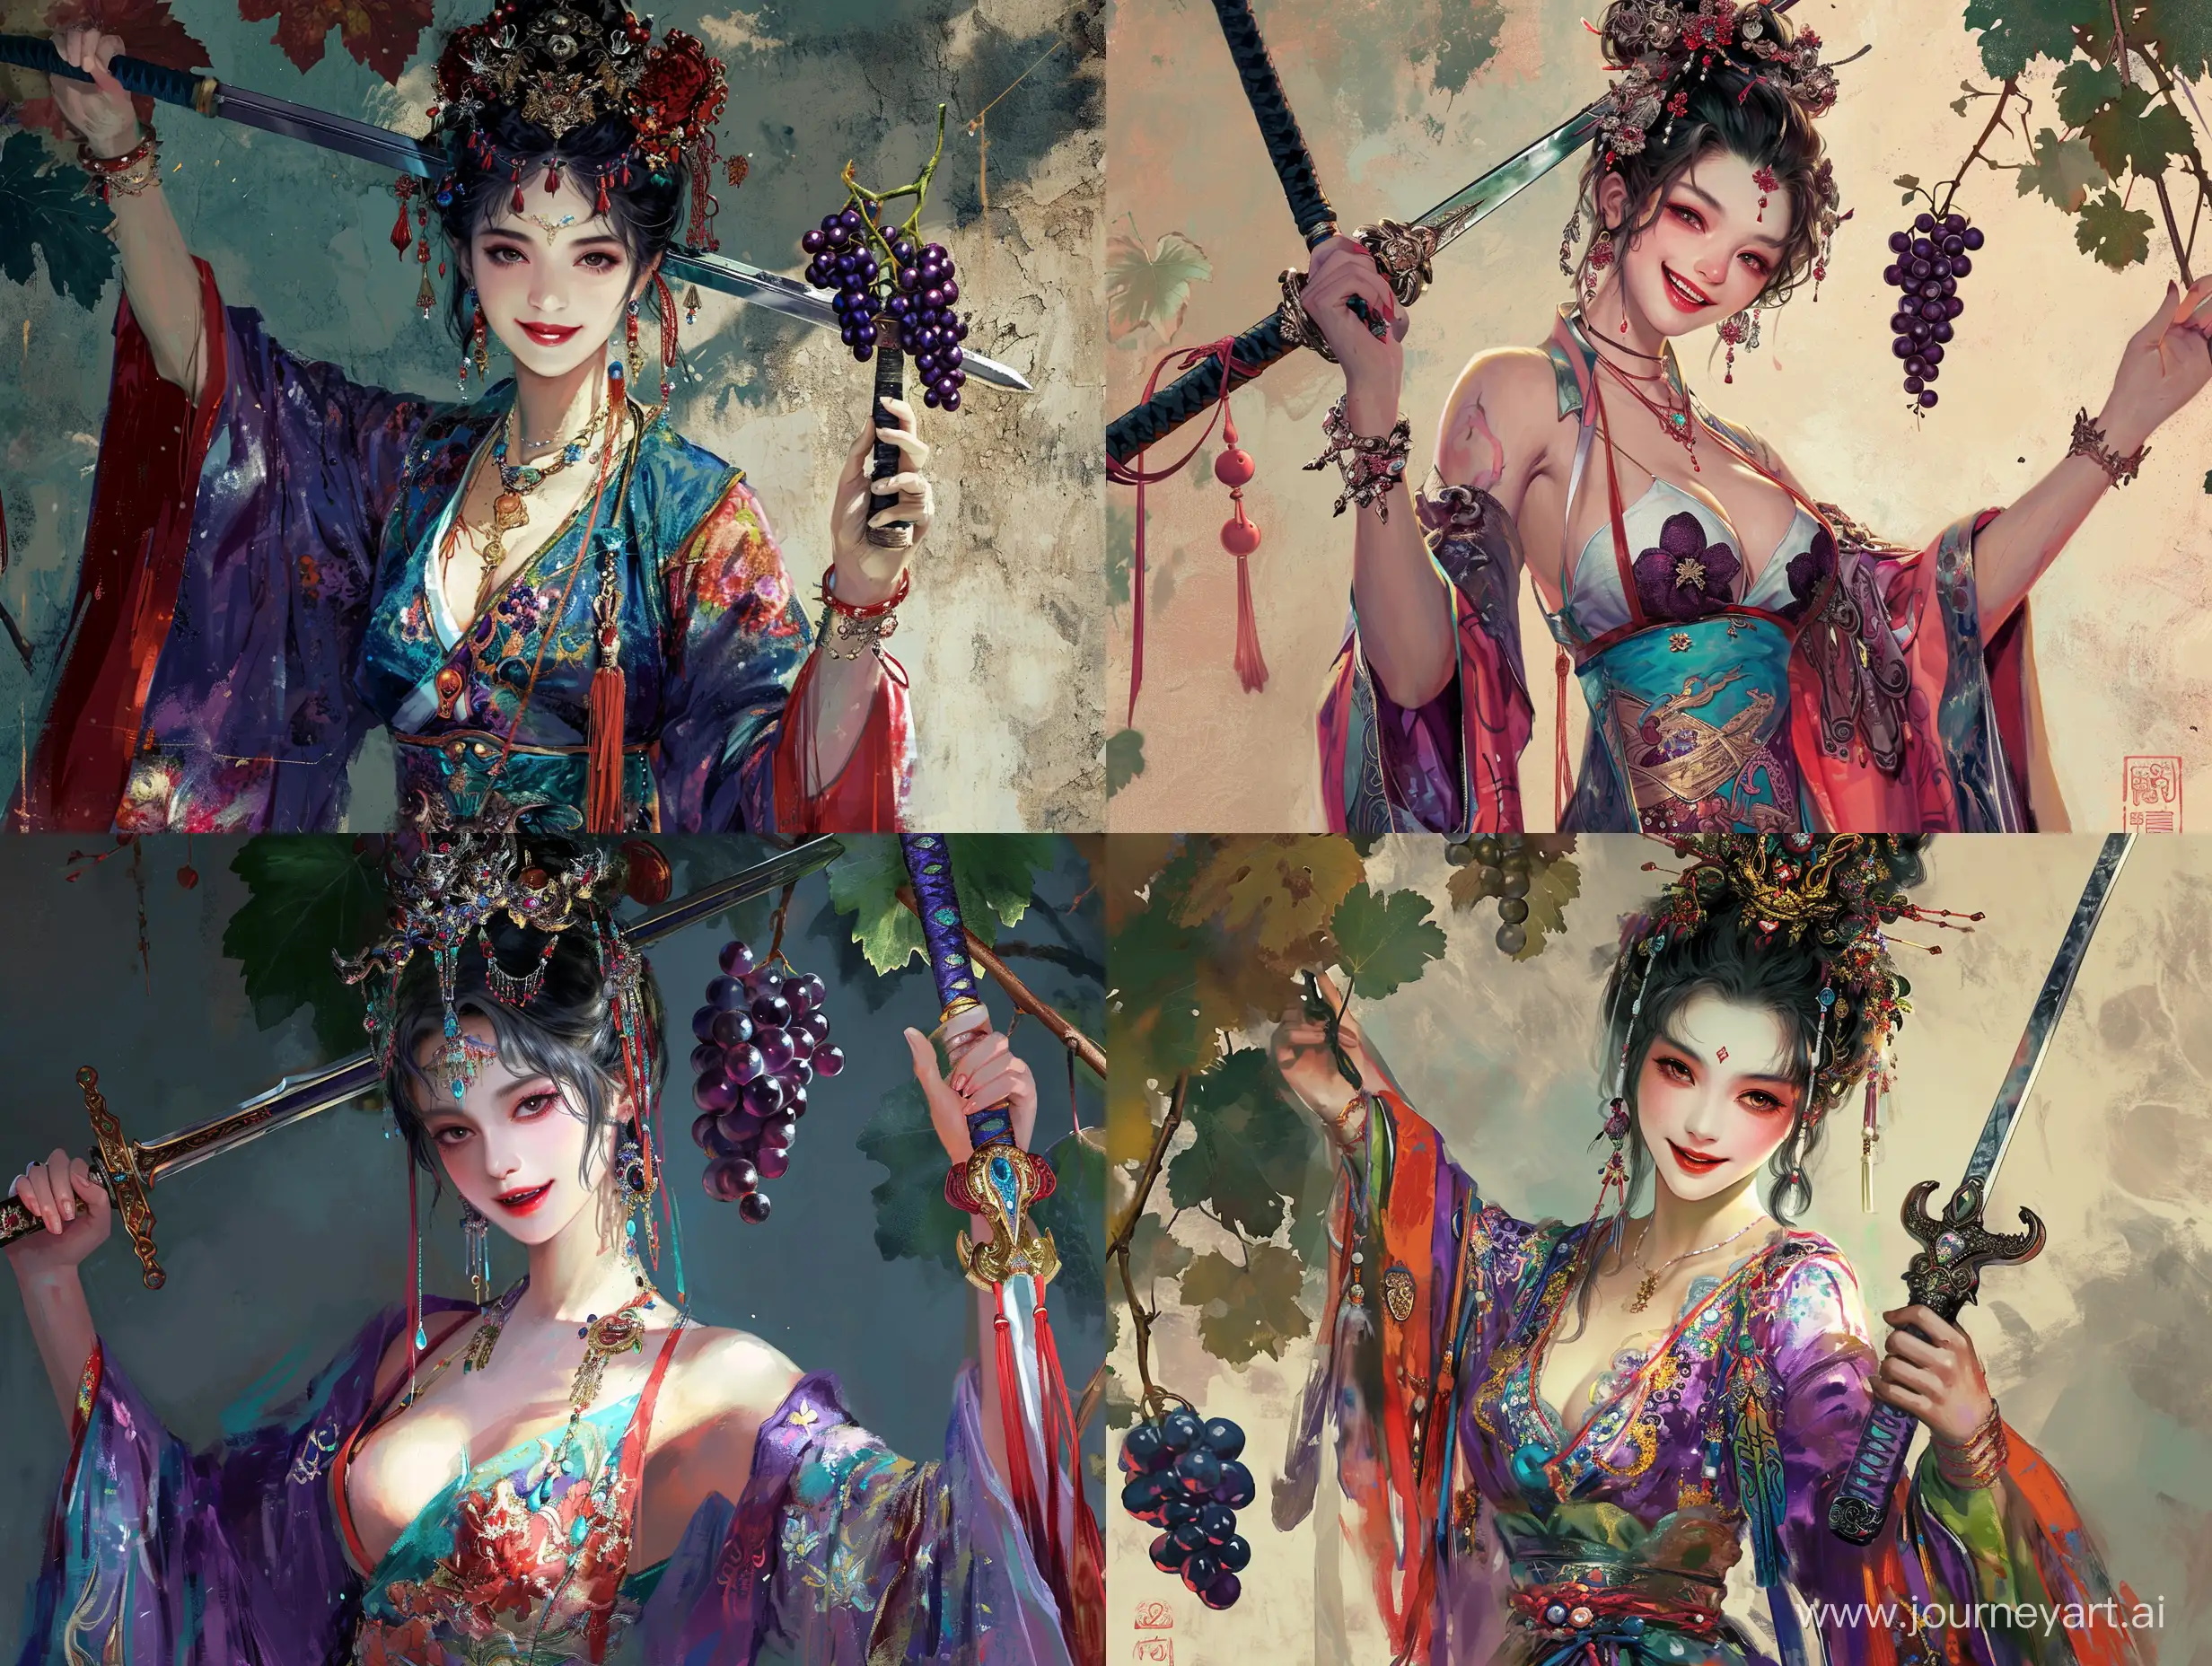 一个美人一手拿着剑，另外一只手拿着葡萄，邪恶的笑容，衣着华丽，彩色中国风，水墨画风格，二次元漫画，高清，高级感，大师之作，古代，东方美学。